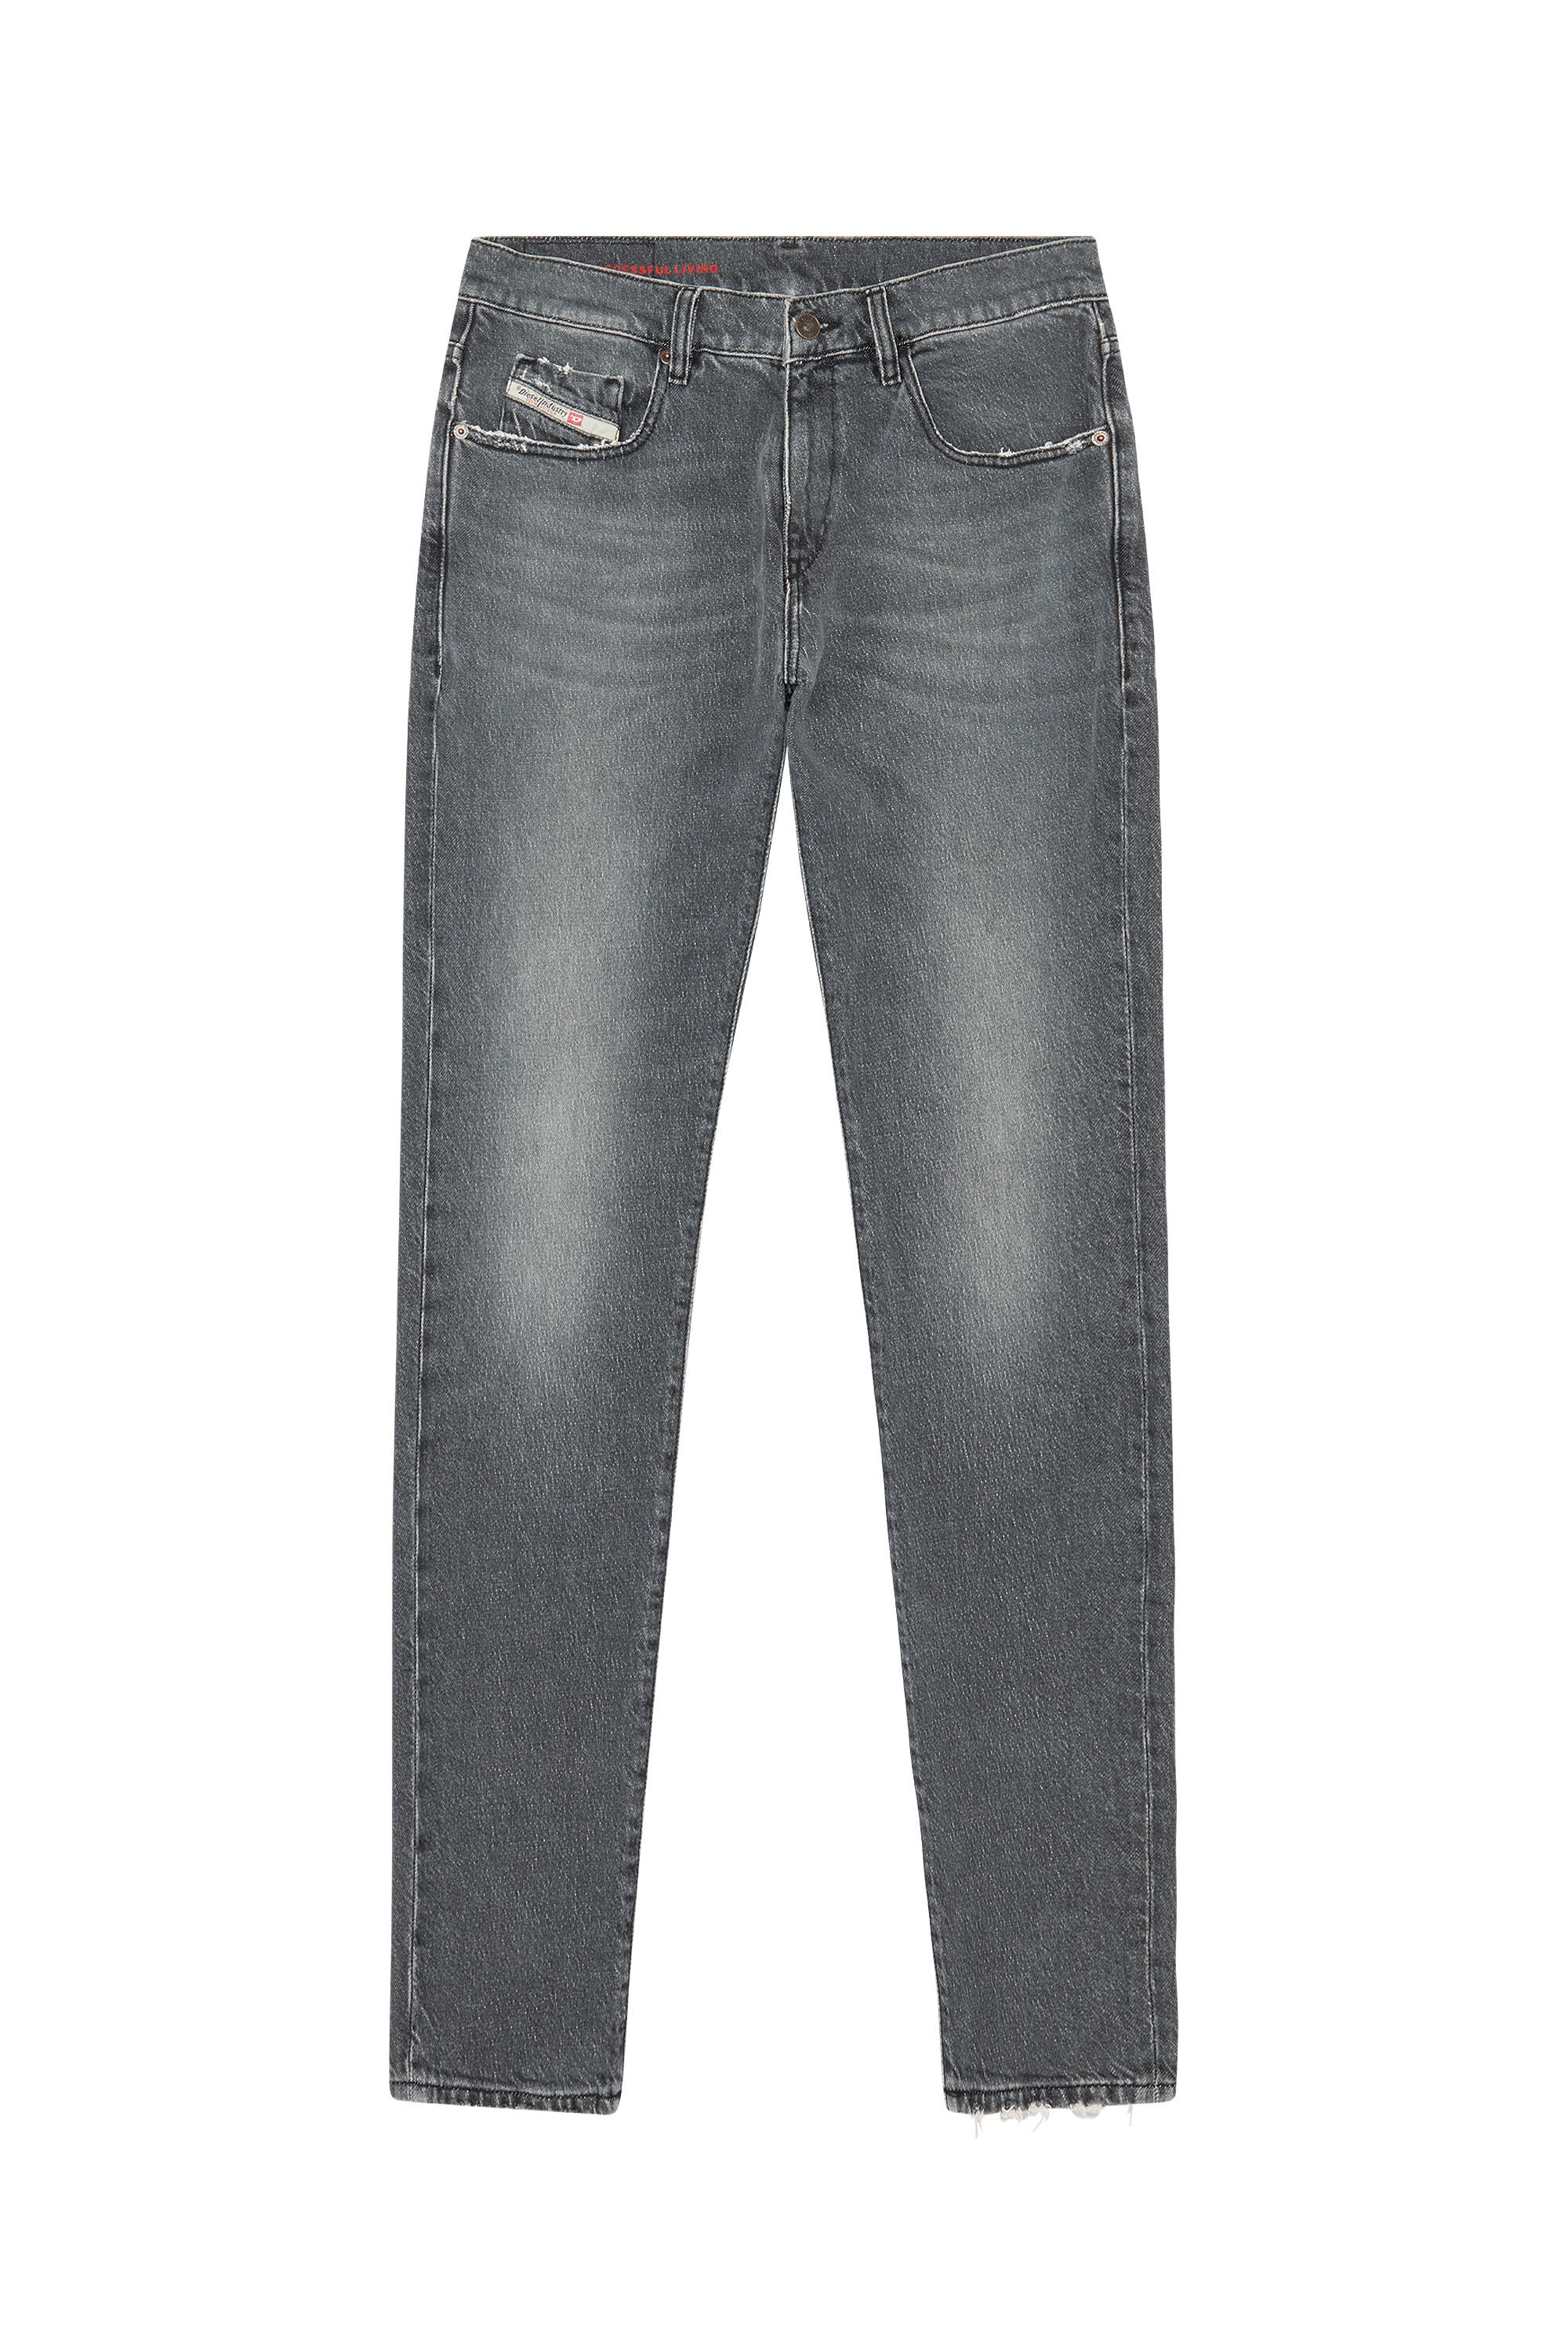 Diesel - Slim Jeans 2019 D-Strukt 09E75, Black/Dark grey - Image 2